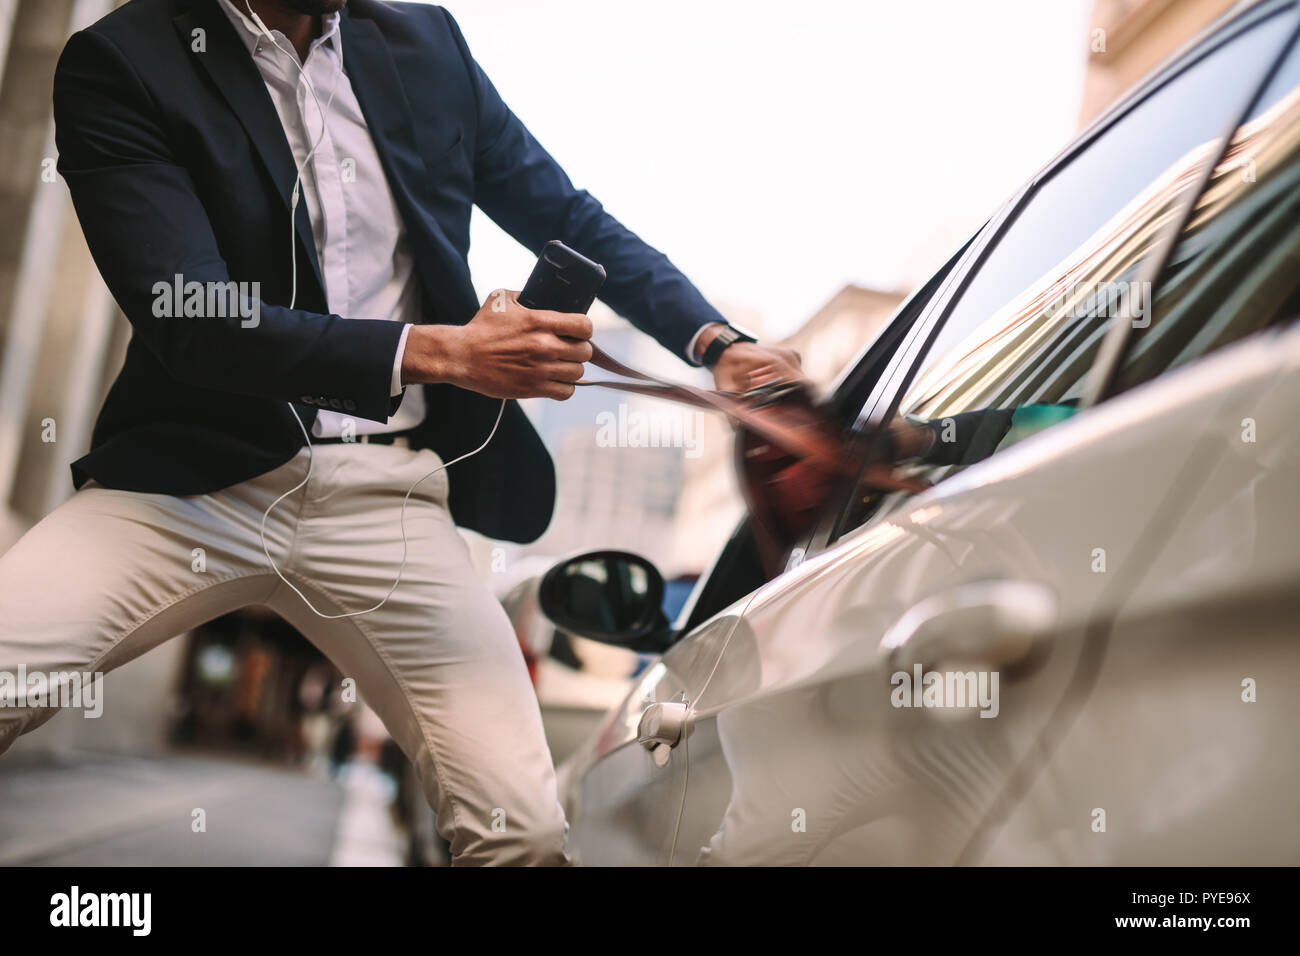 Imprenditore tirando fuori la sua borsetta da un'auto. Uomo in tuta telefono azienda parlando fuori la sua borsa da una finestra auto sulla strada. Foto Stock